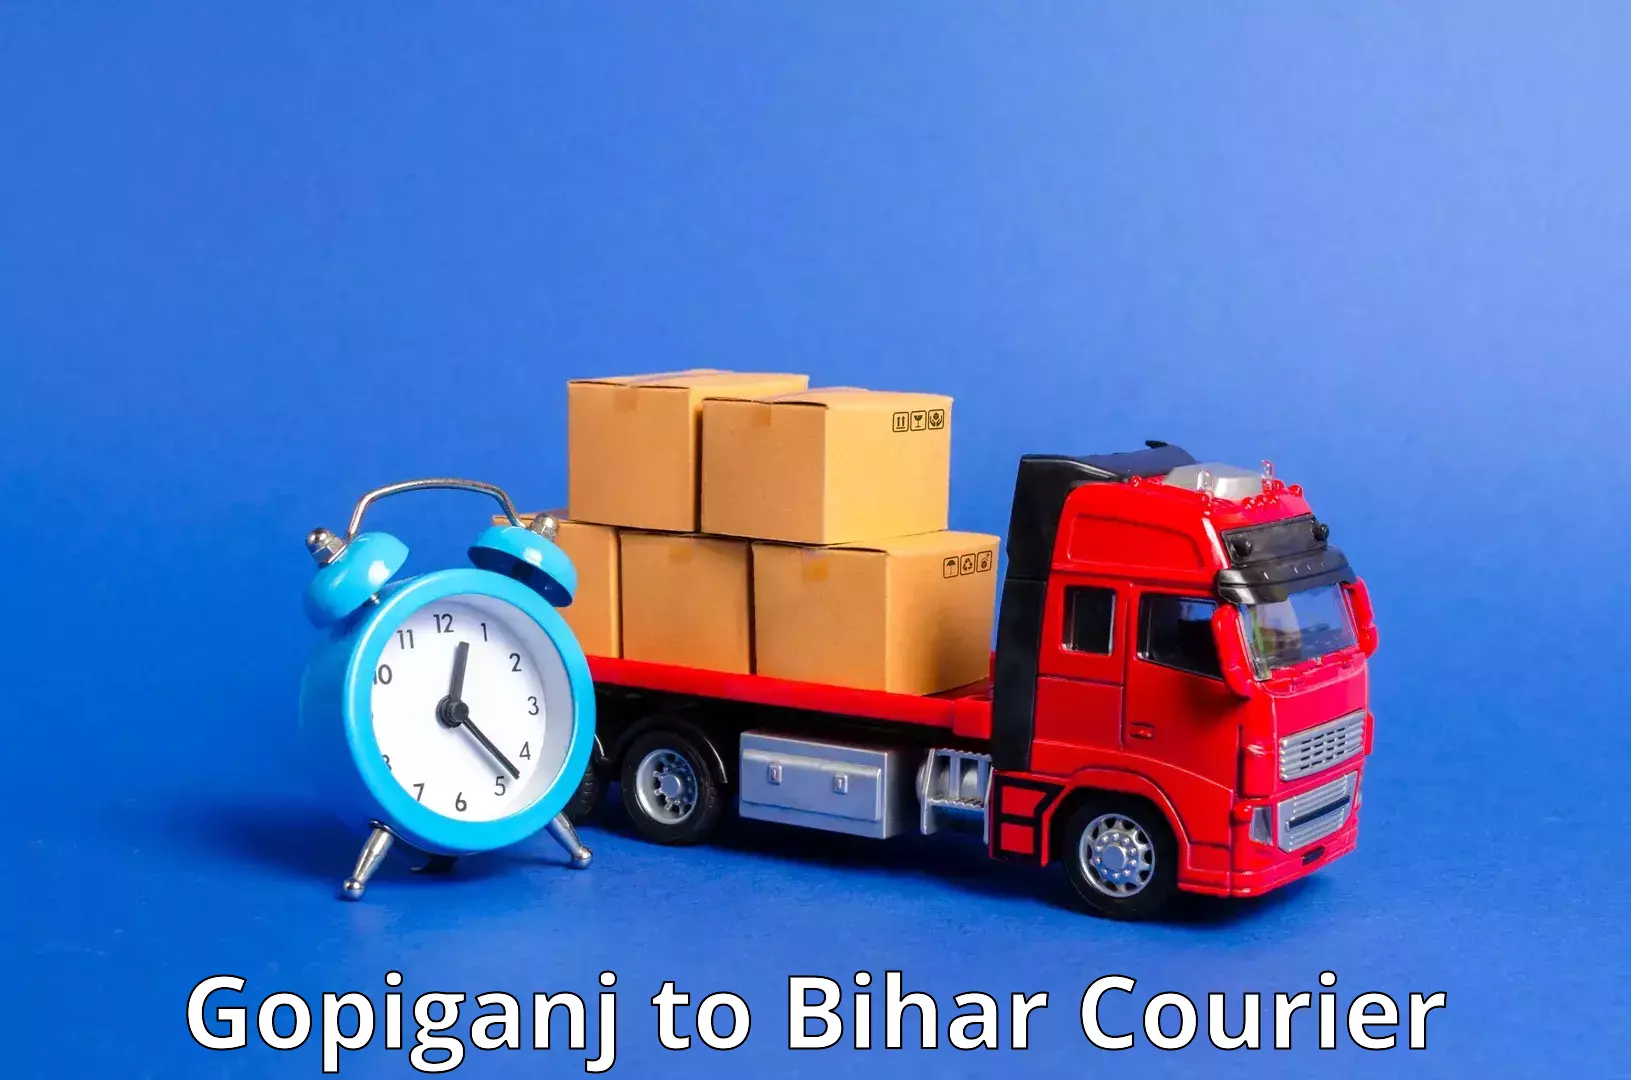 Package delivery network Gopiganj to Bihar